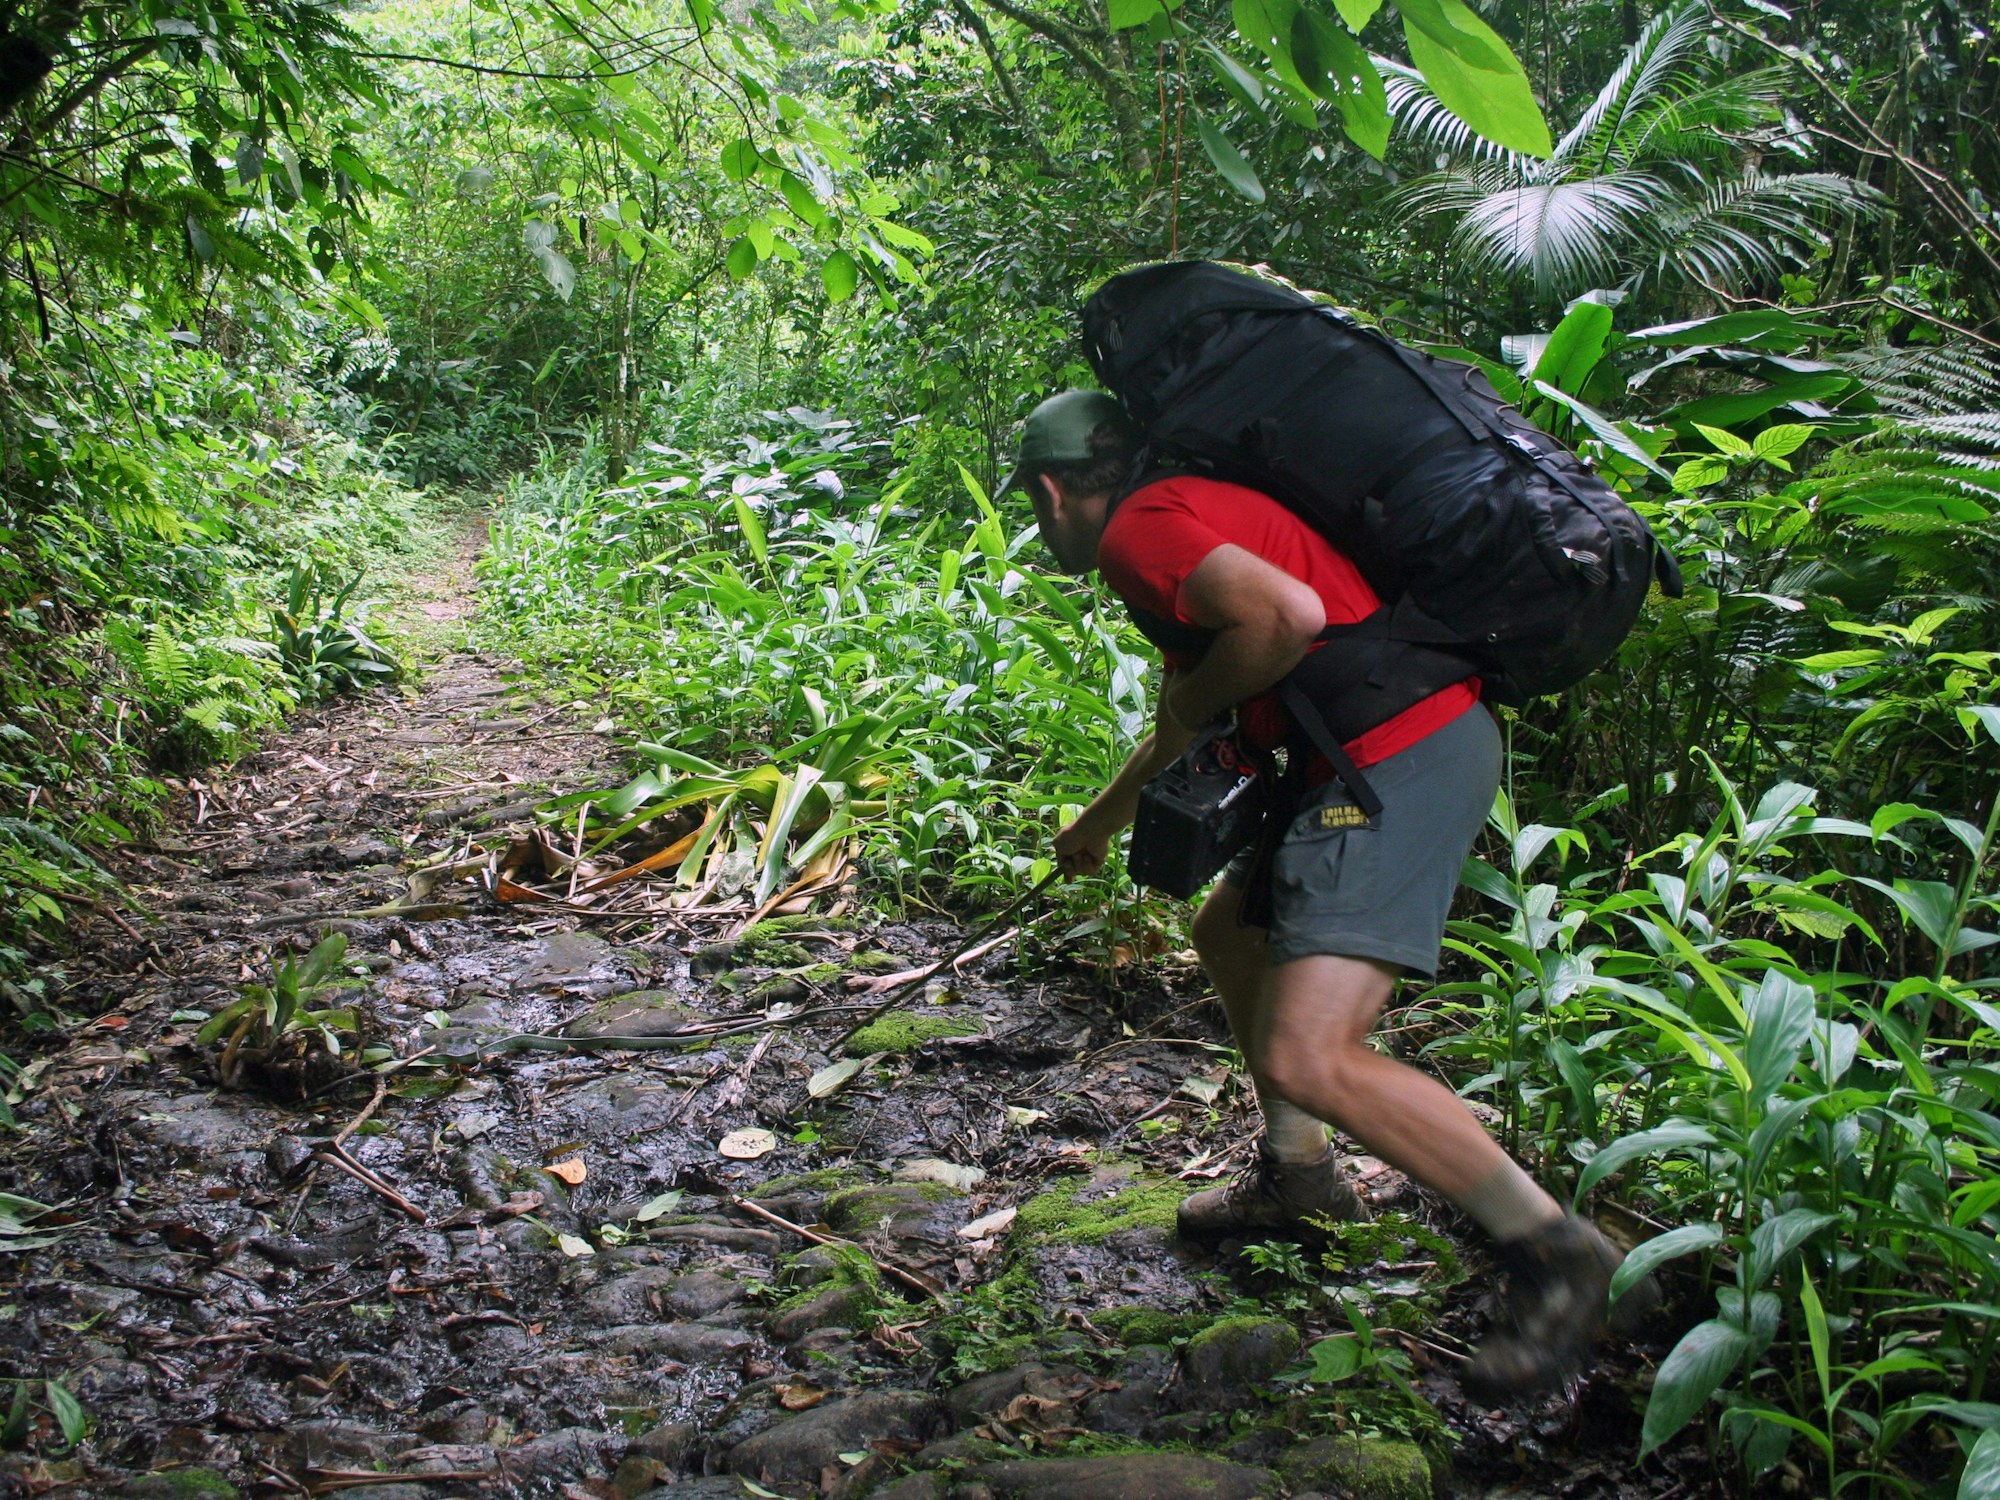 Auf dem alten Steinweg im Nationalpark Serra da Bocaina stoßen Wanderer immer wieder auf Schlangen. Das Symbolbild zeigt einen Wanderer im Nationalpark, der der São Paulo und Rio de Janeiro miteinander verbindet.